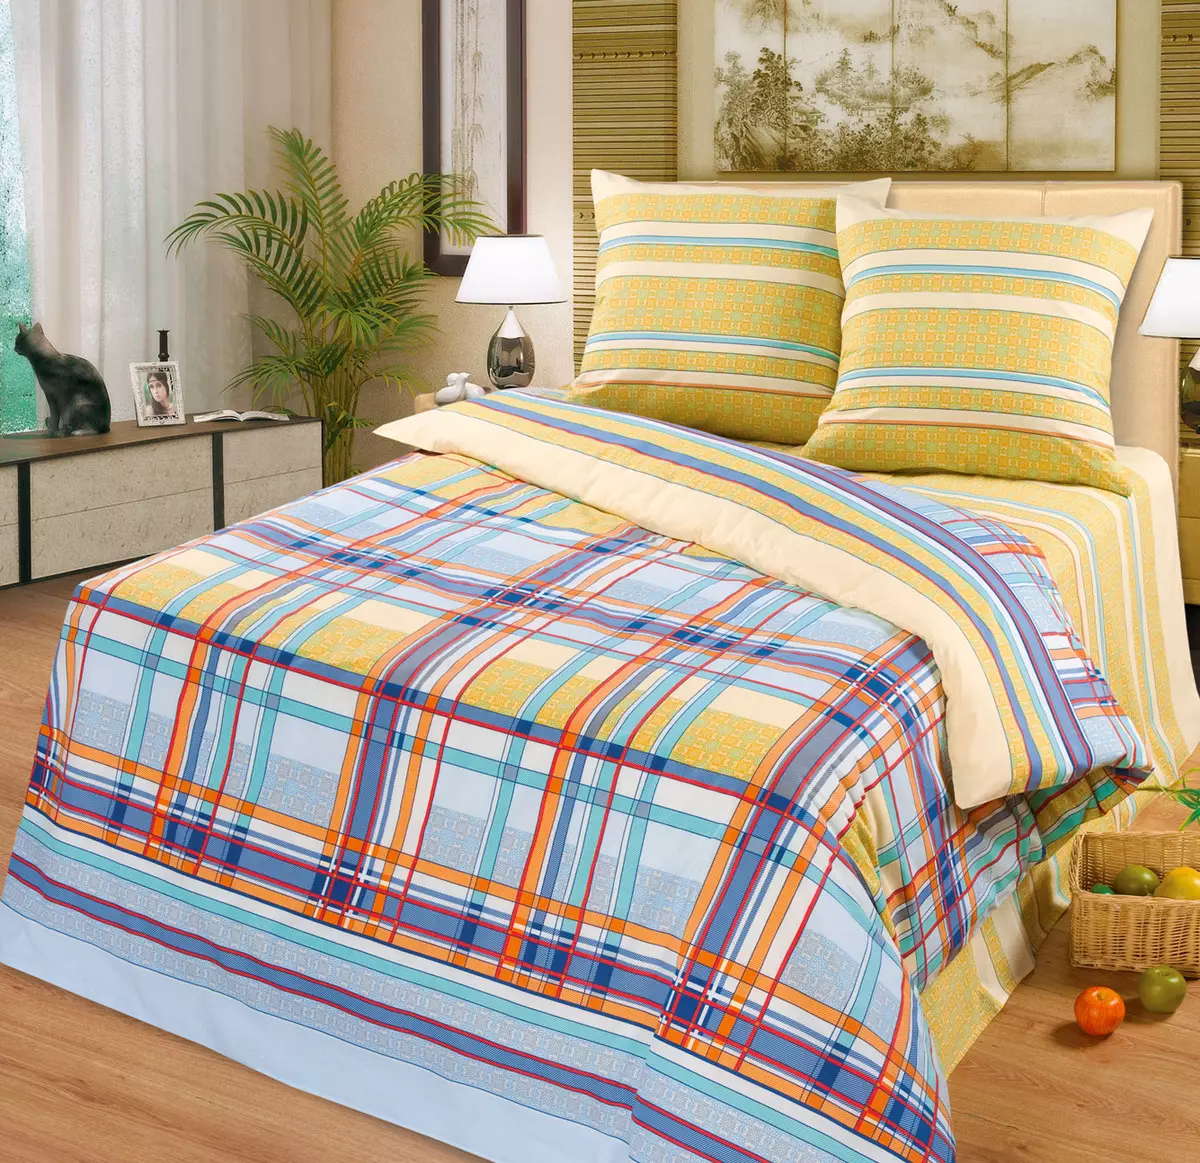 Tela de ropa de cama: ¿Qué material es mejor comprar? Tipos y calificación. ¿Cómo elegir una cama de alta calidad? ¿De qué están cosidos? 24761_43